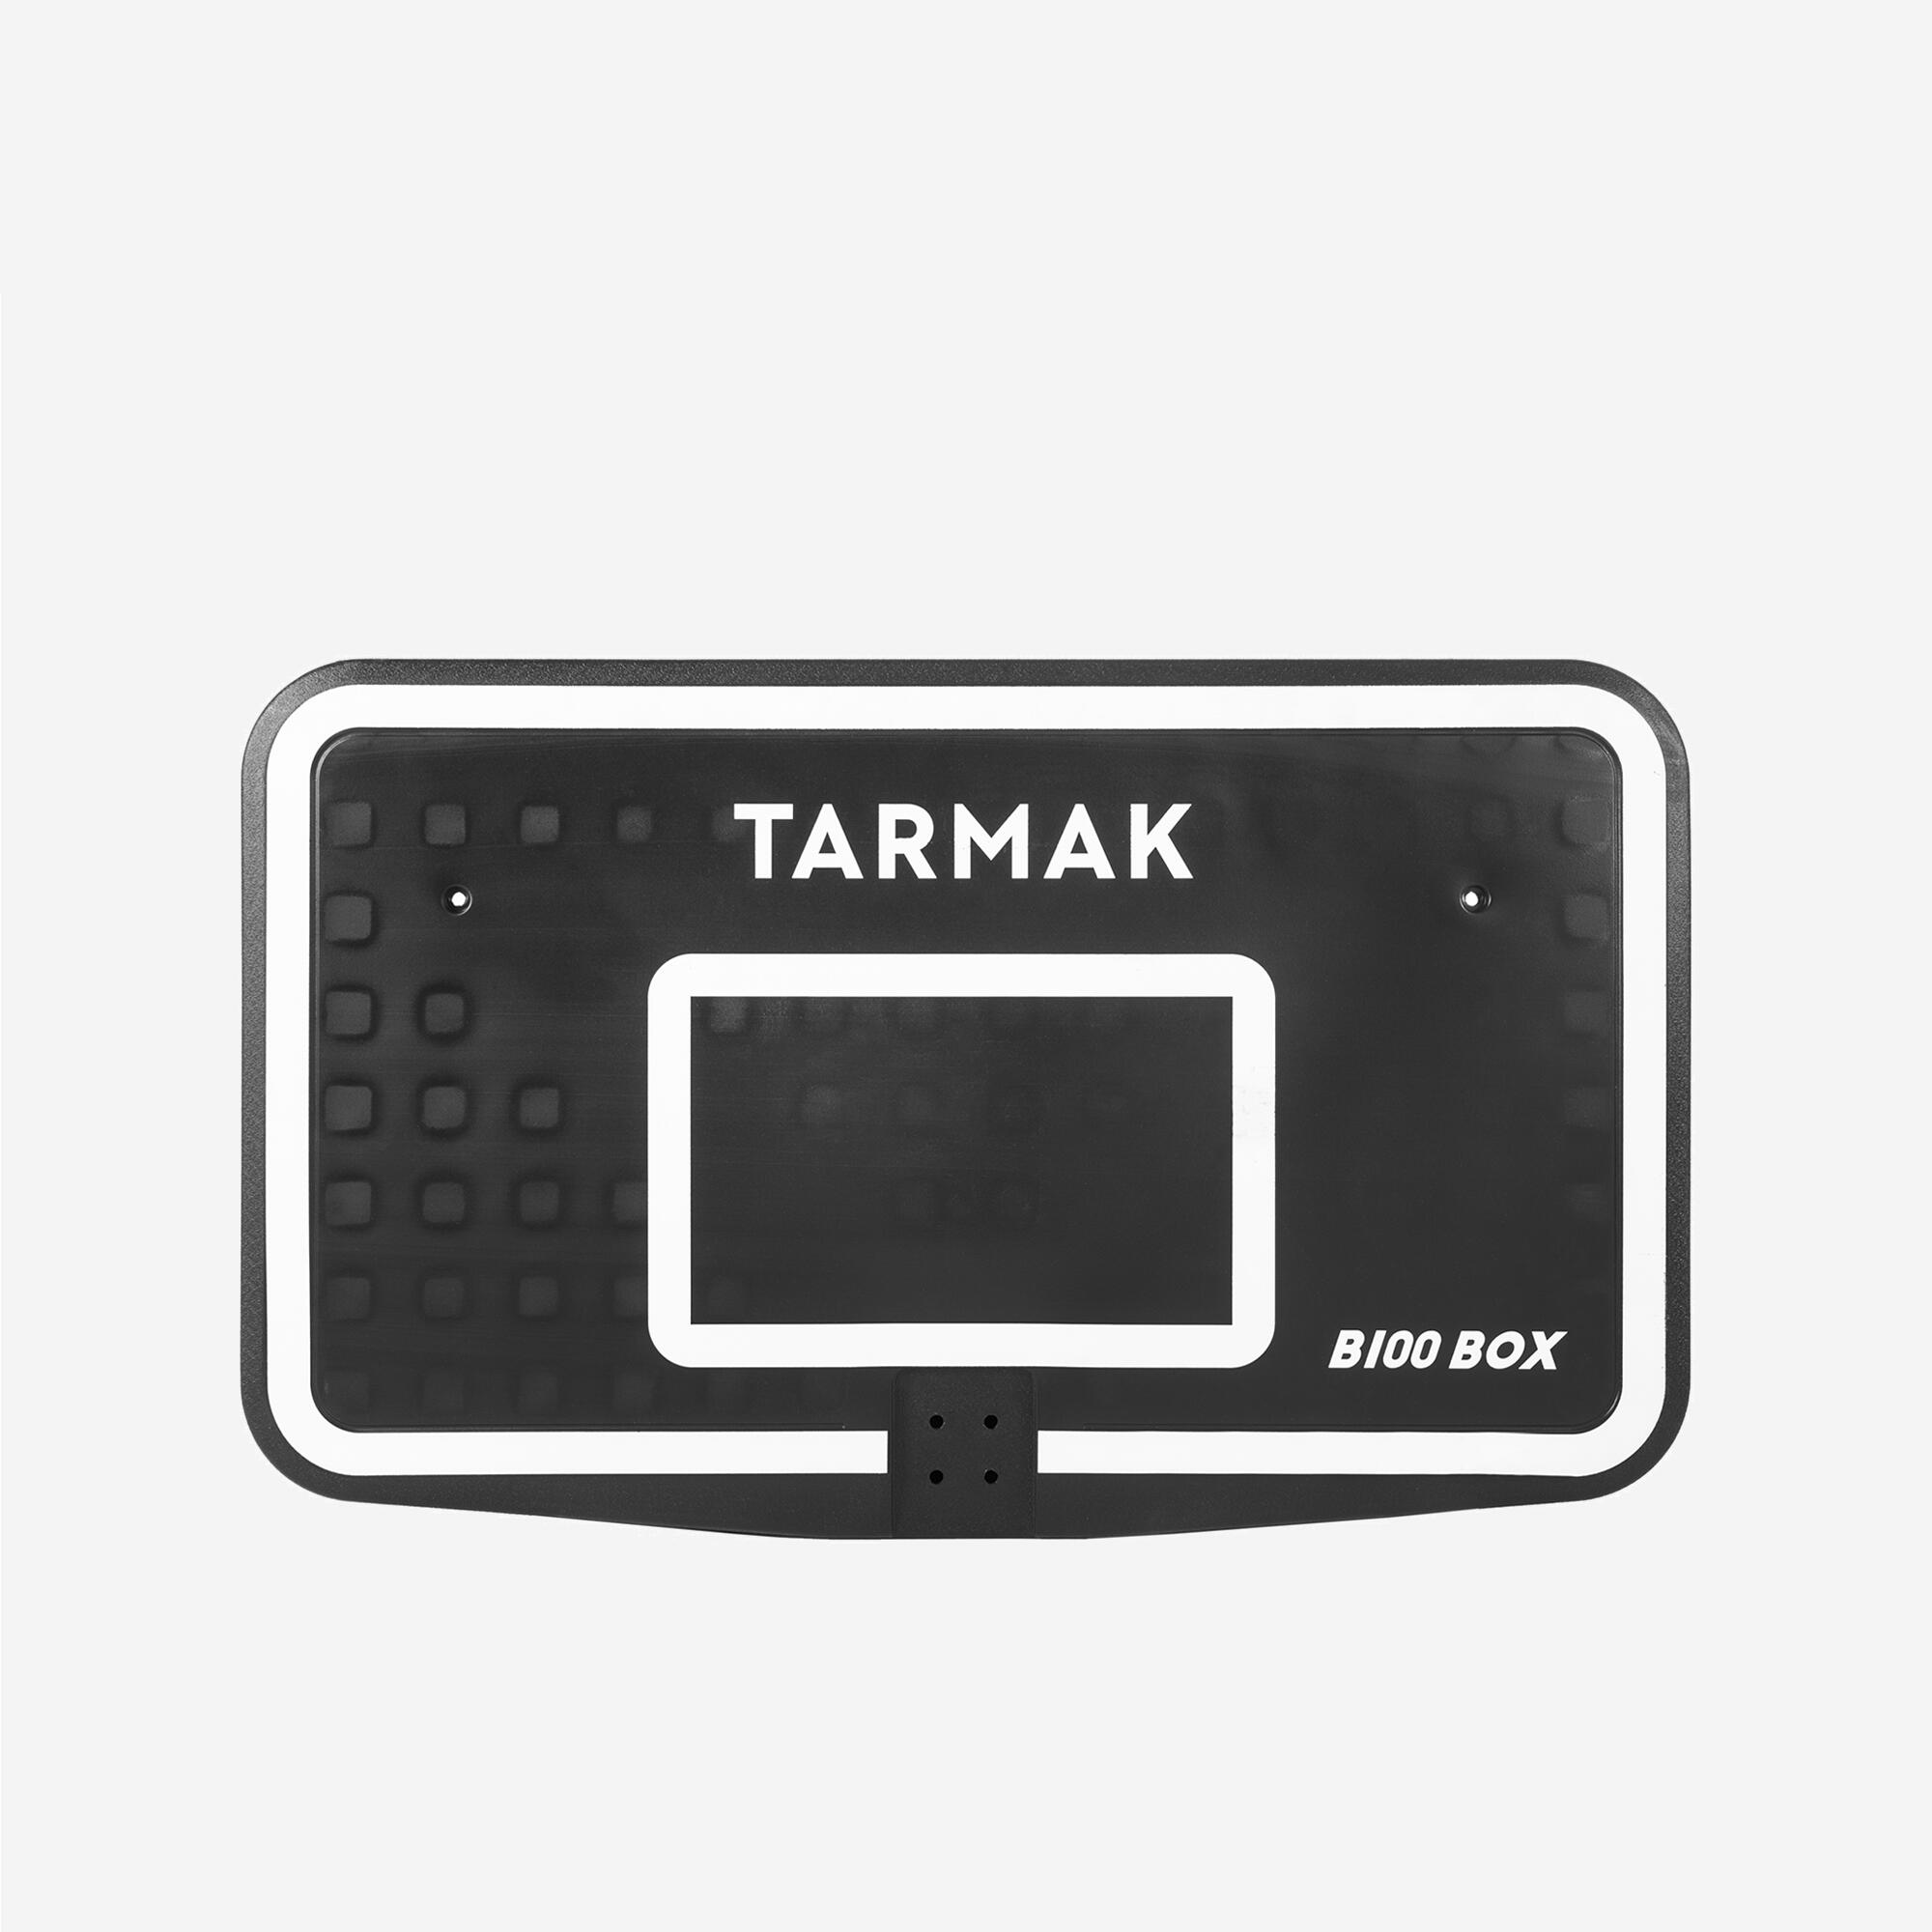 TARMAK Basketball Backboard B100 Box